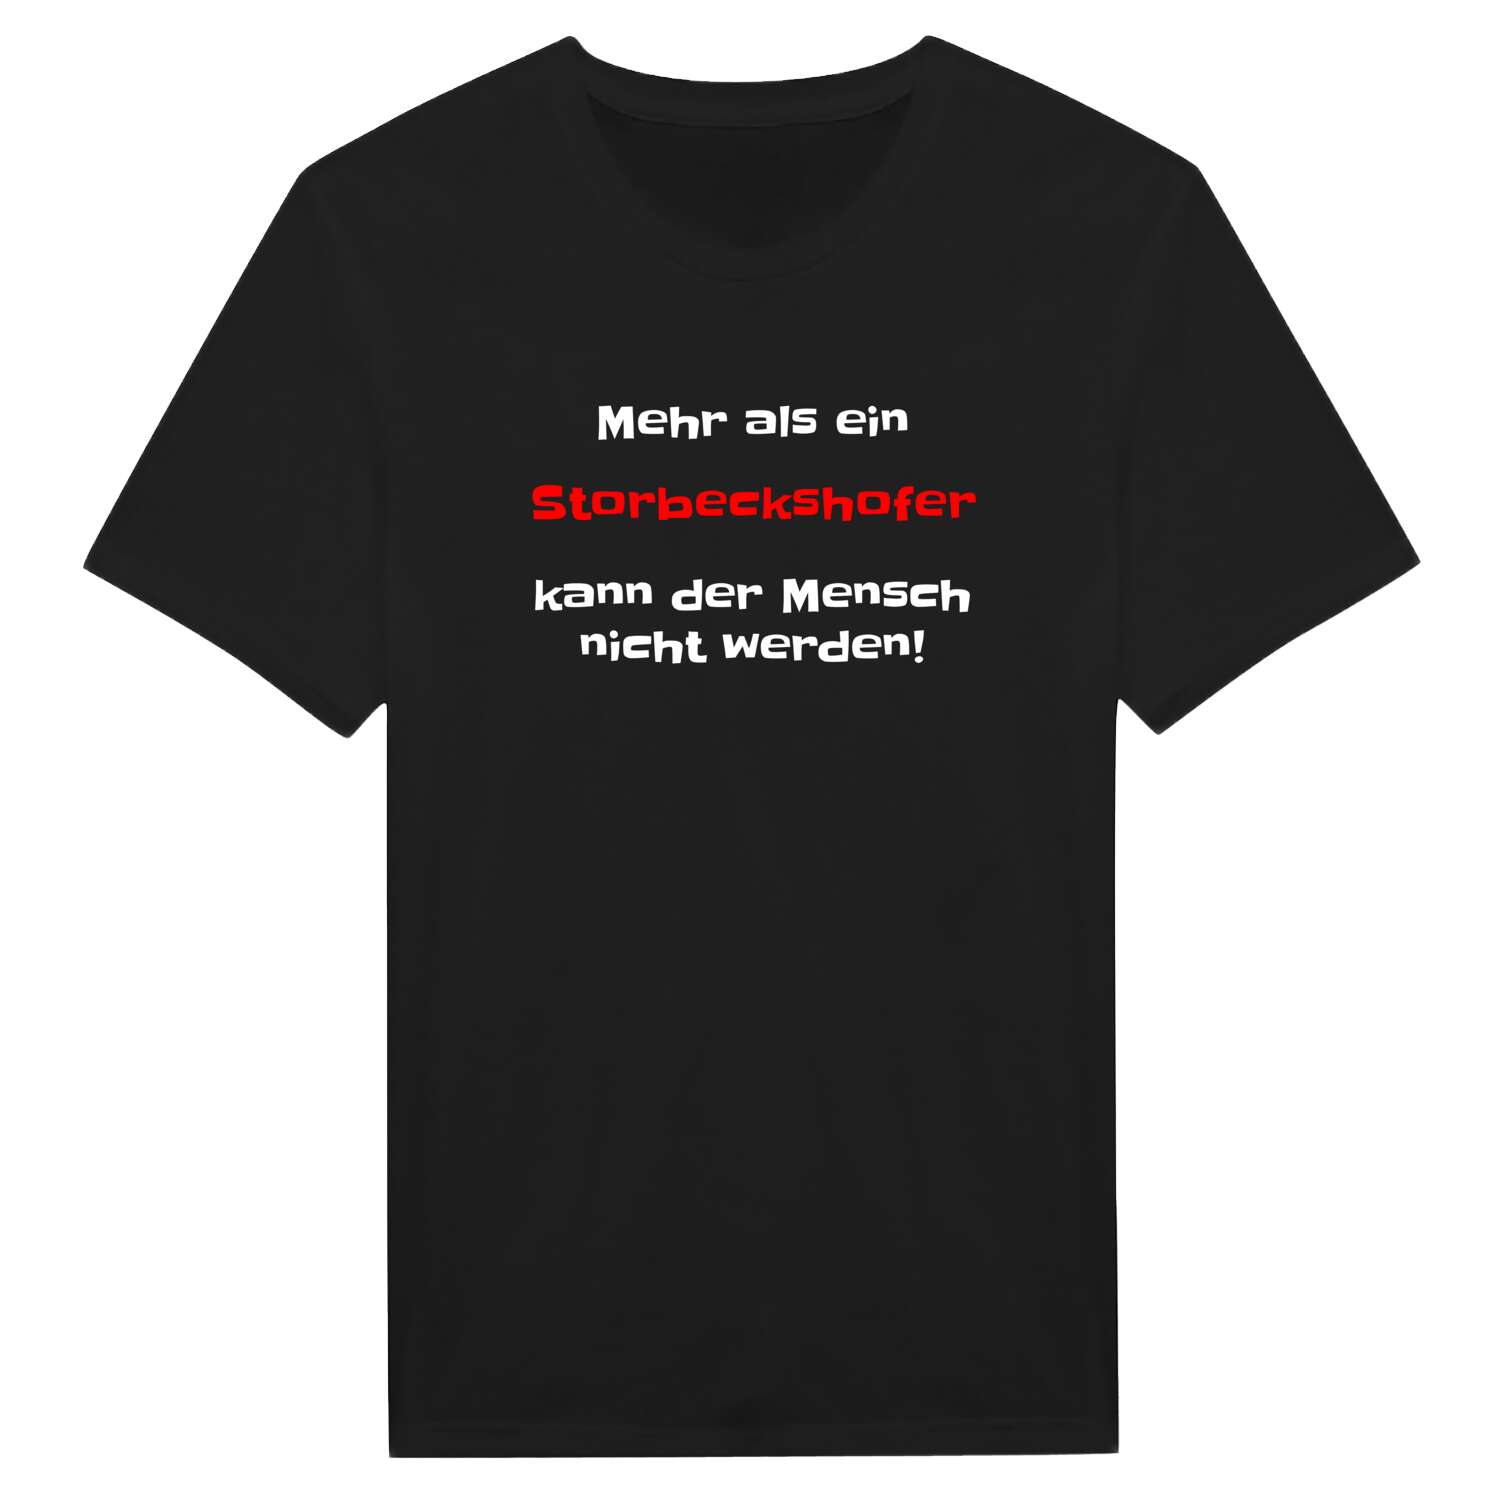 Storbeckshof T-Shirt »Mehr als ein«